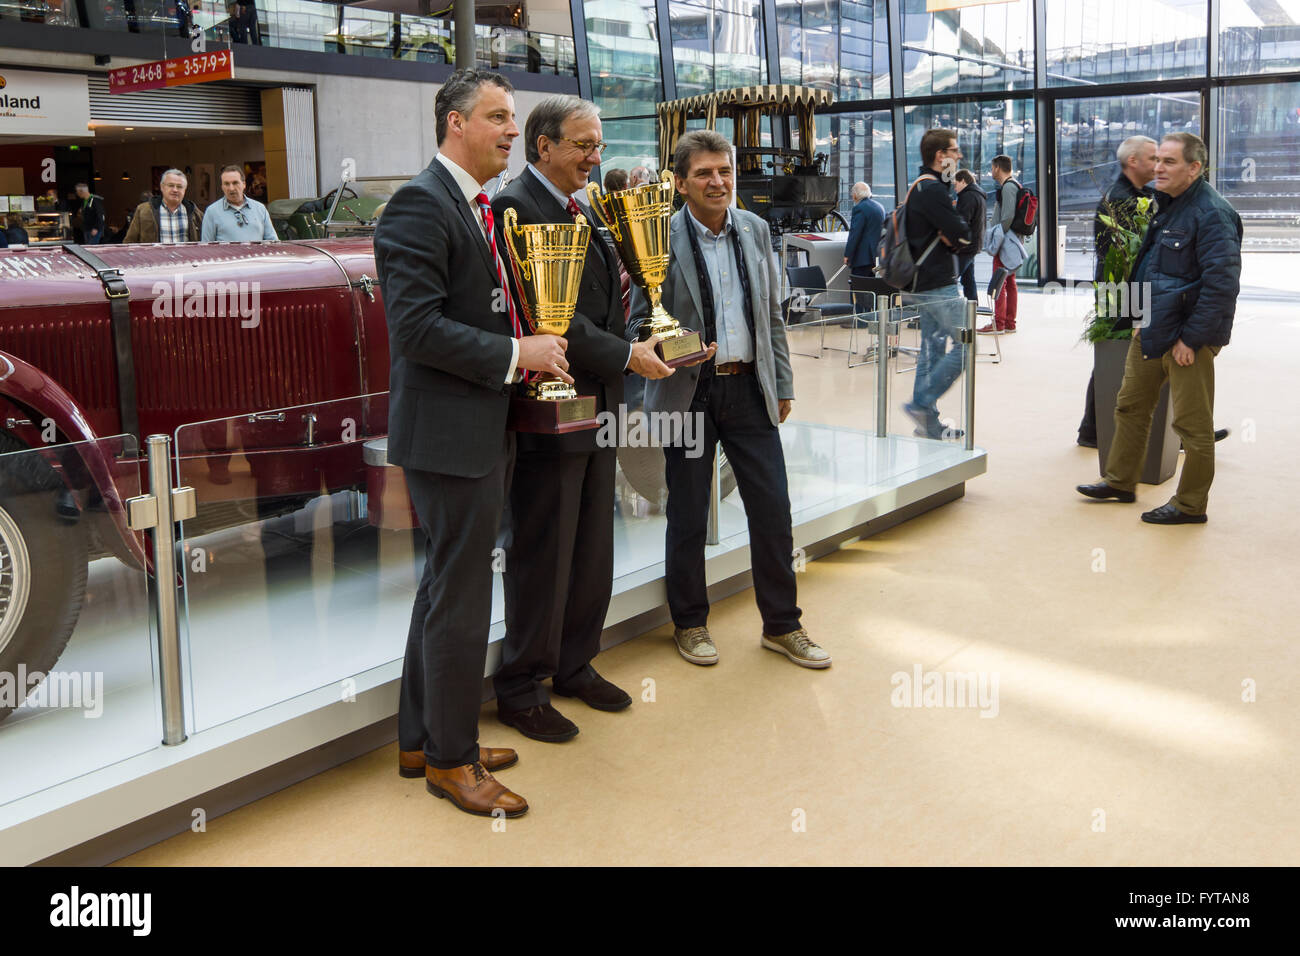 STUTTGART, Alemania - Marzo 18, 2016: los ganadores del Premio. Europa la mayor exposición de coches clásicos clásicos 'retro' Foto de stock